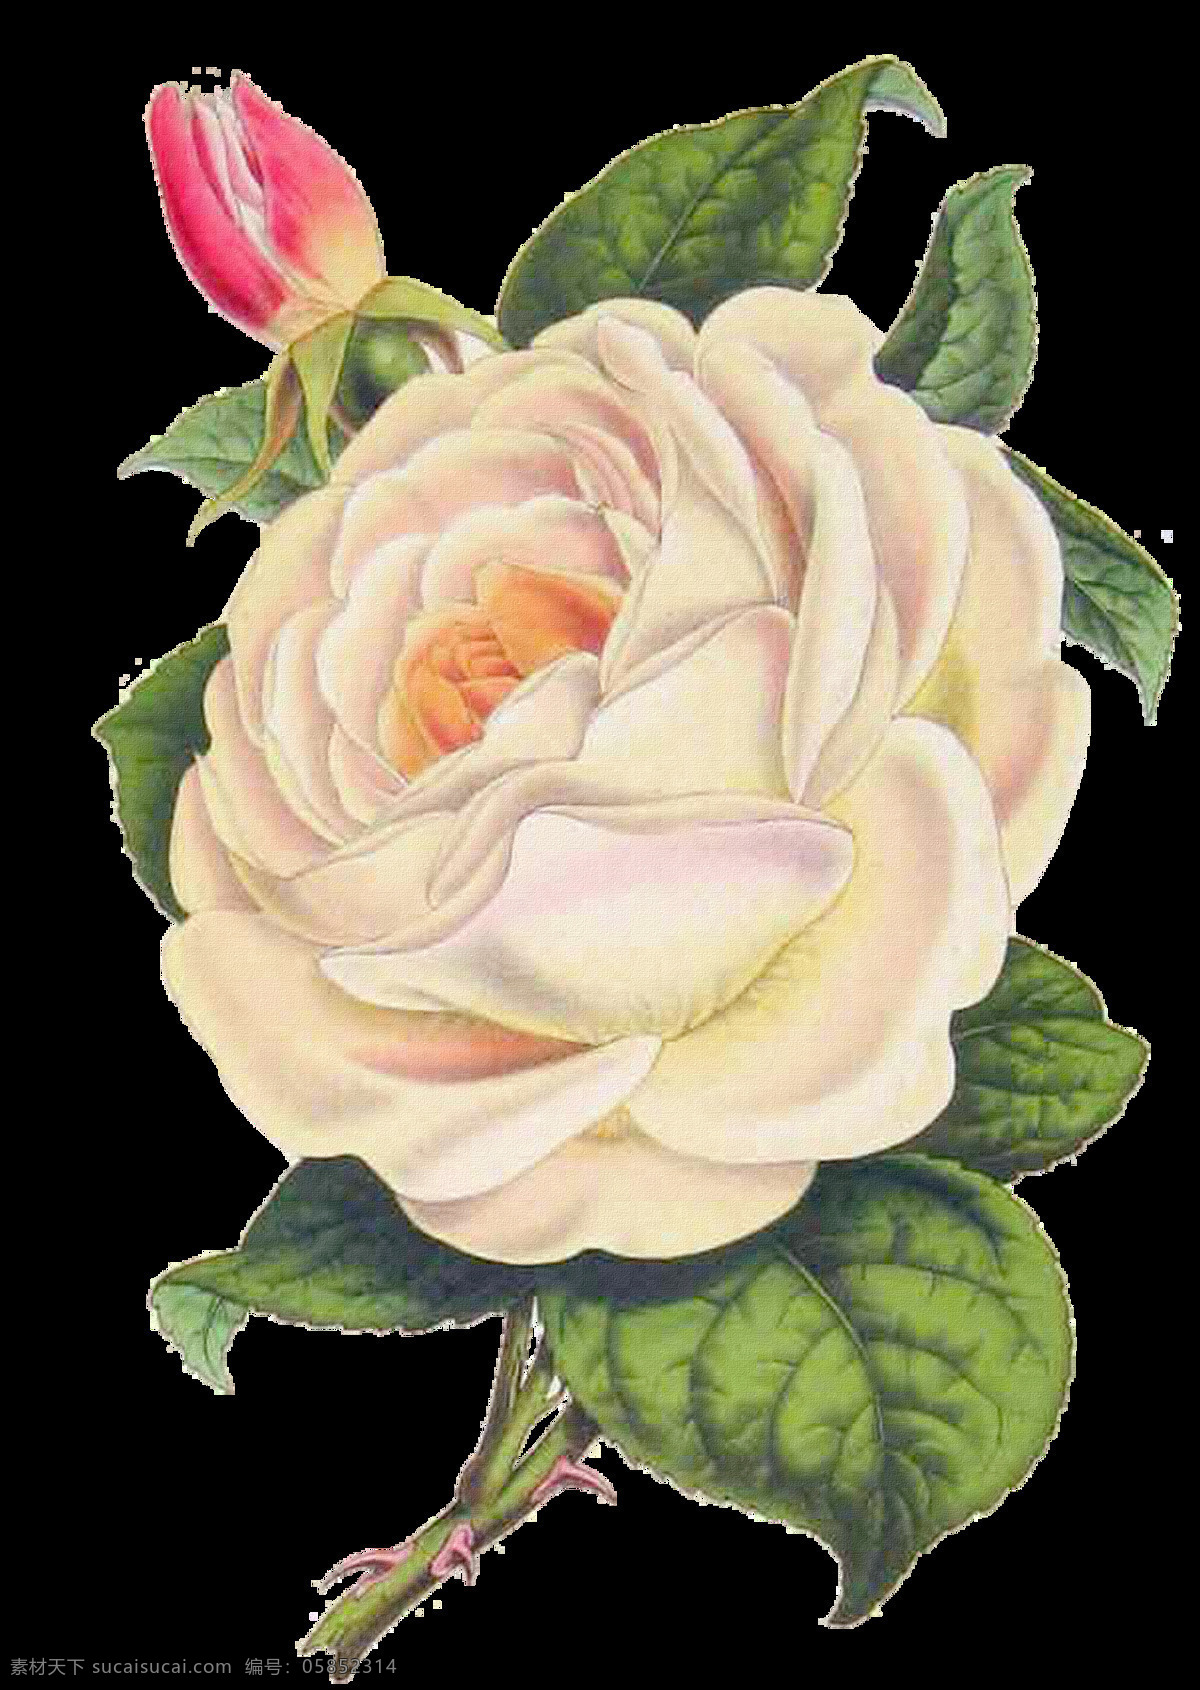 白色玫瑰花 手绘玫瑰花 手绘 白色 玫瑰花 手绘花朵 复古玫瑰花 复古花朵 设计素材 模板下载 静物花卉 月季花 花朵绘画 玫瑰 绘画书法 文化艺术 花朵素材